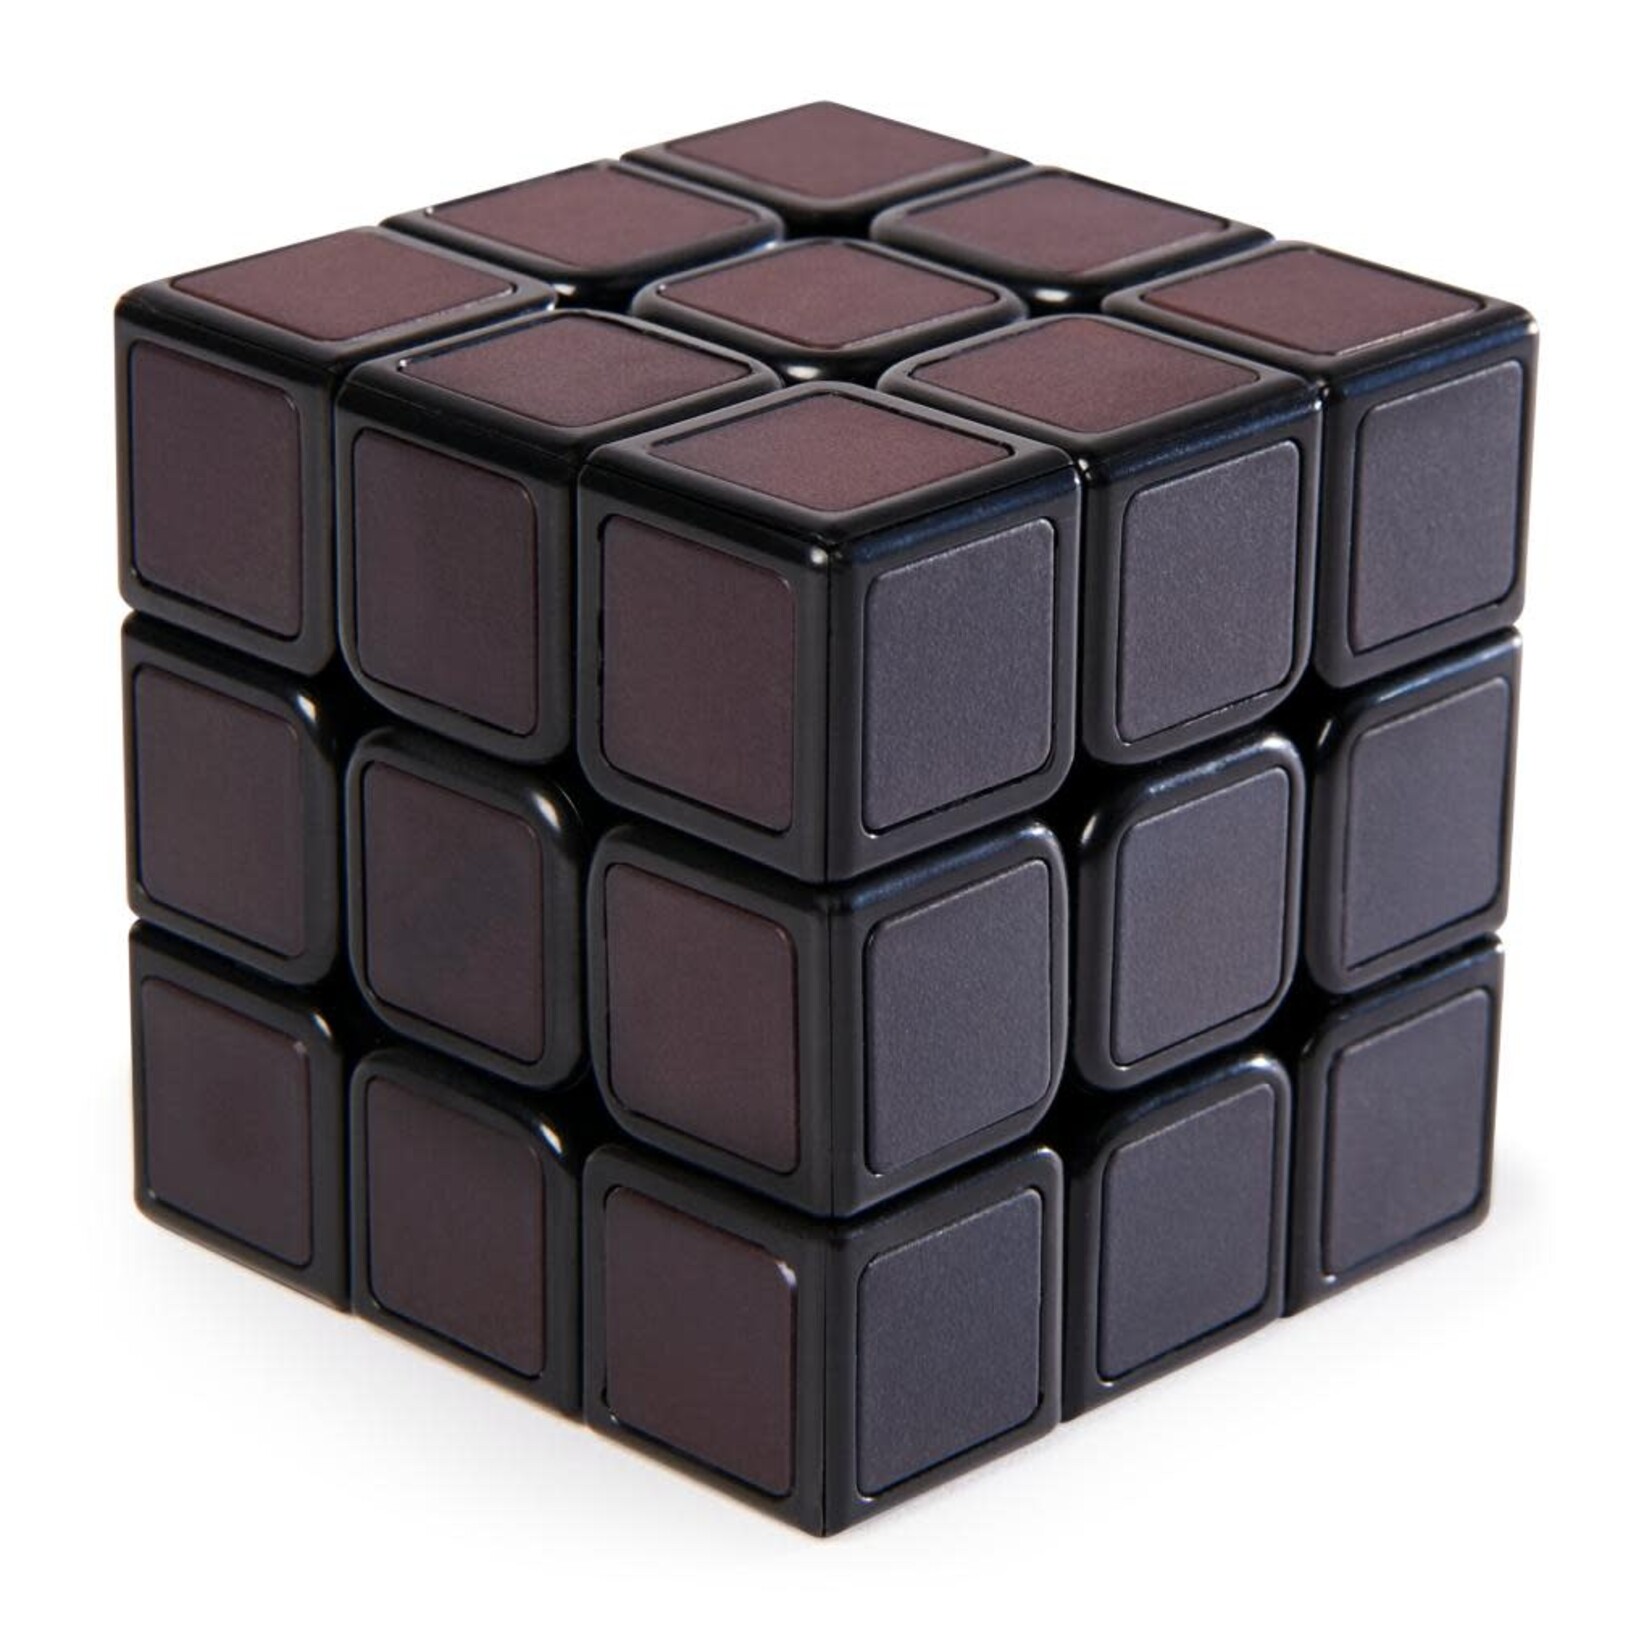 Rubik's Rubik's Phantom Cube